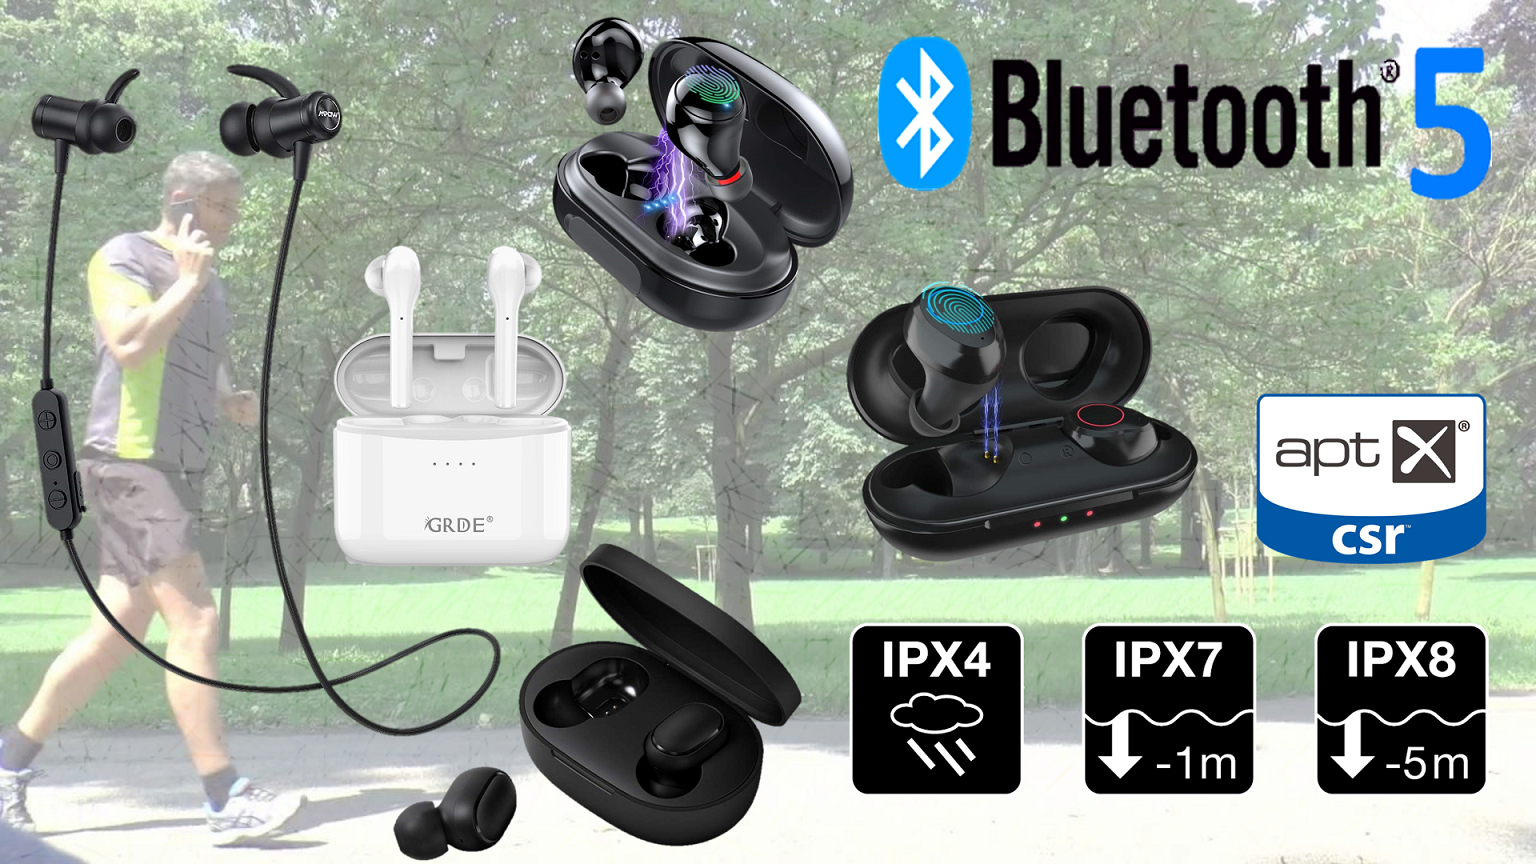 Auricolari Bluetooth senza fili migliori